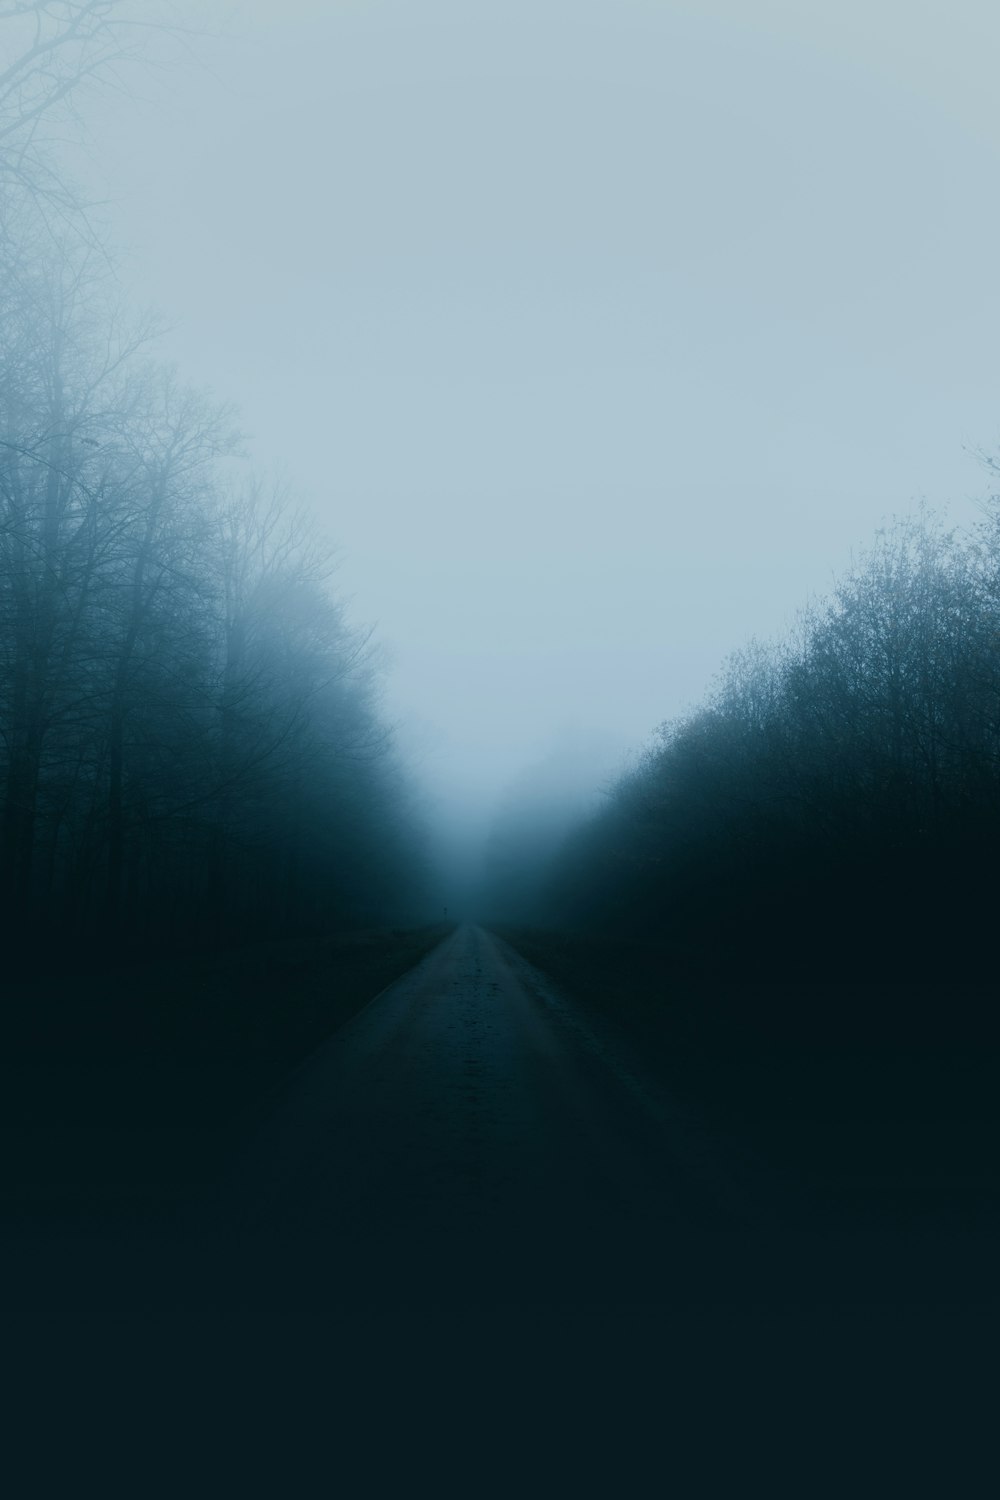 Carretera rodeada de árboles cubiertos de niebla